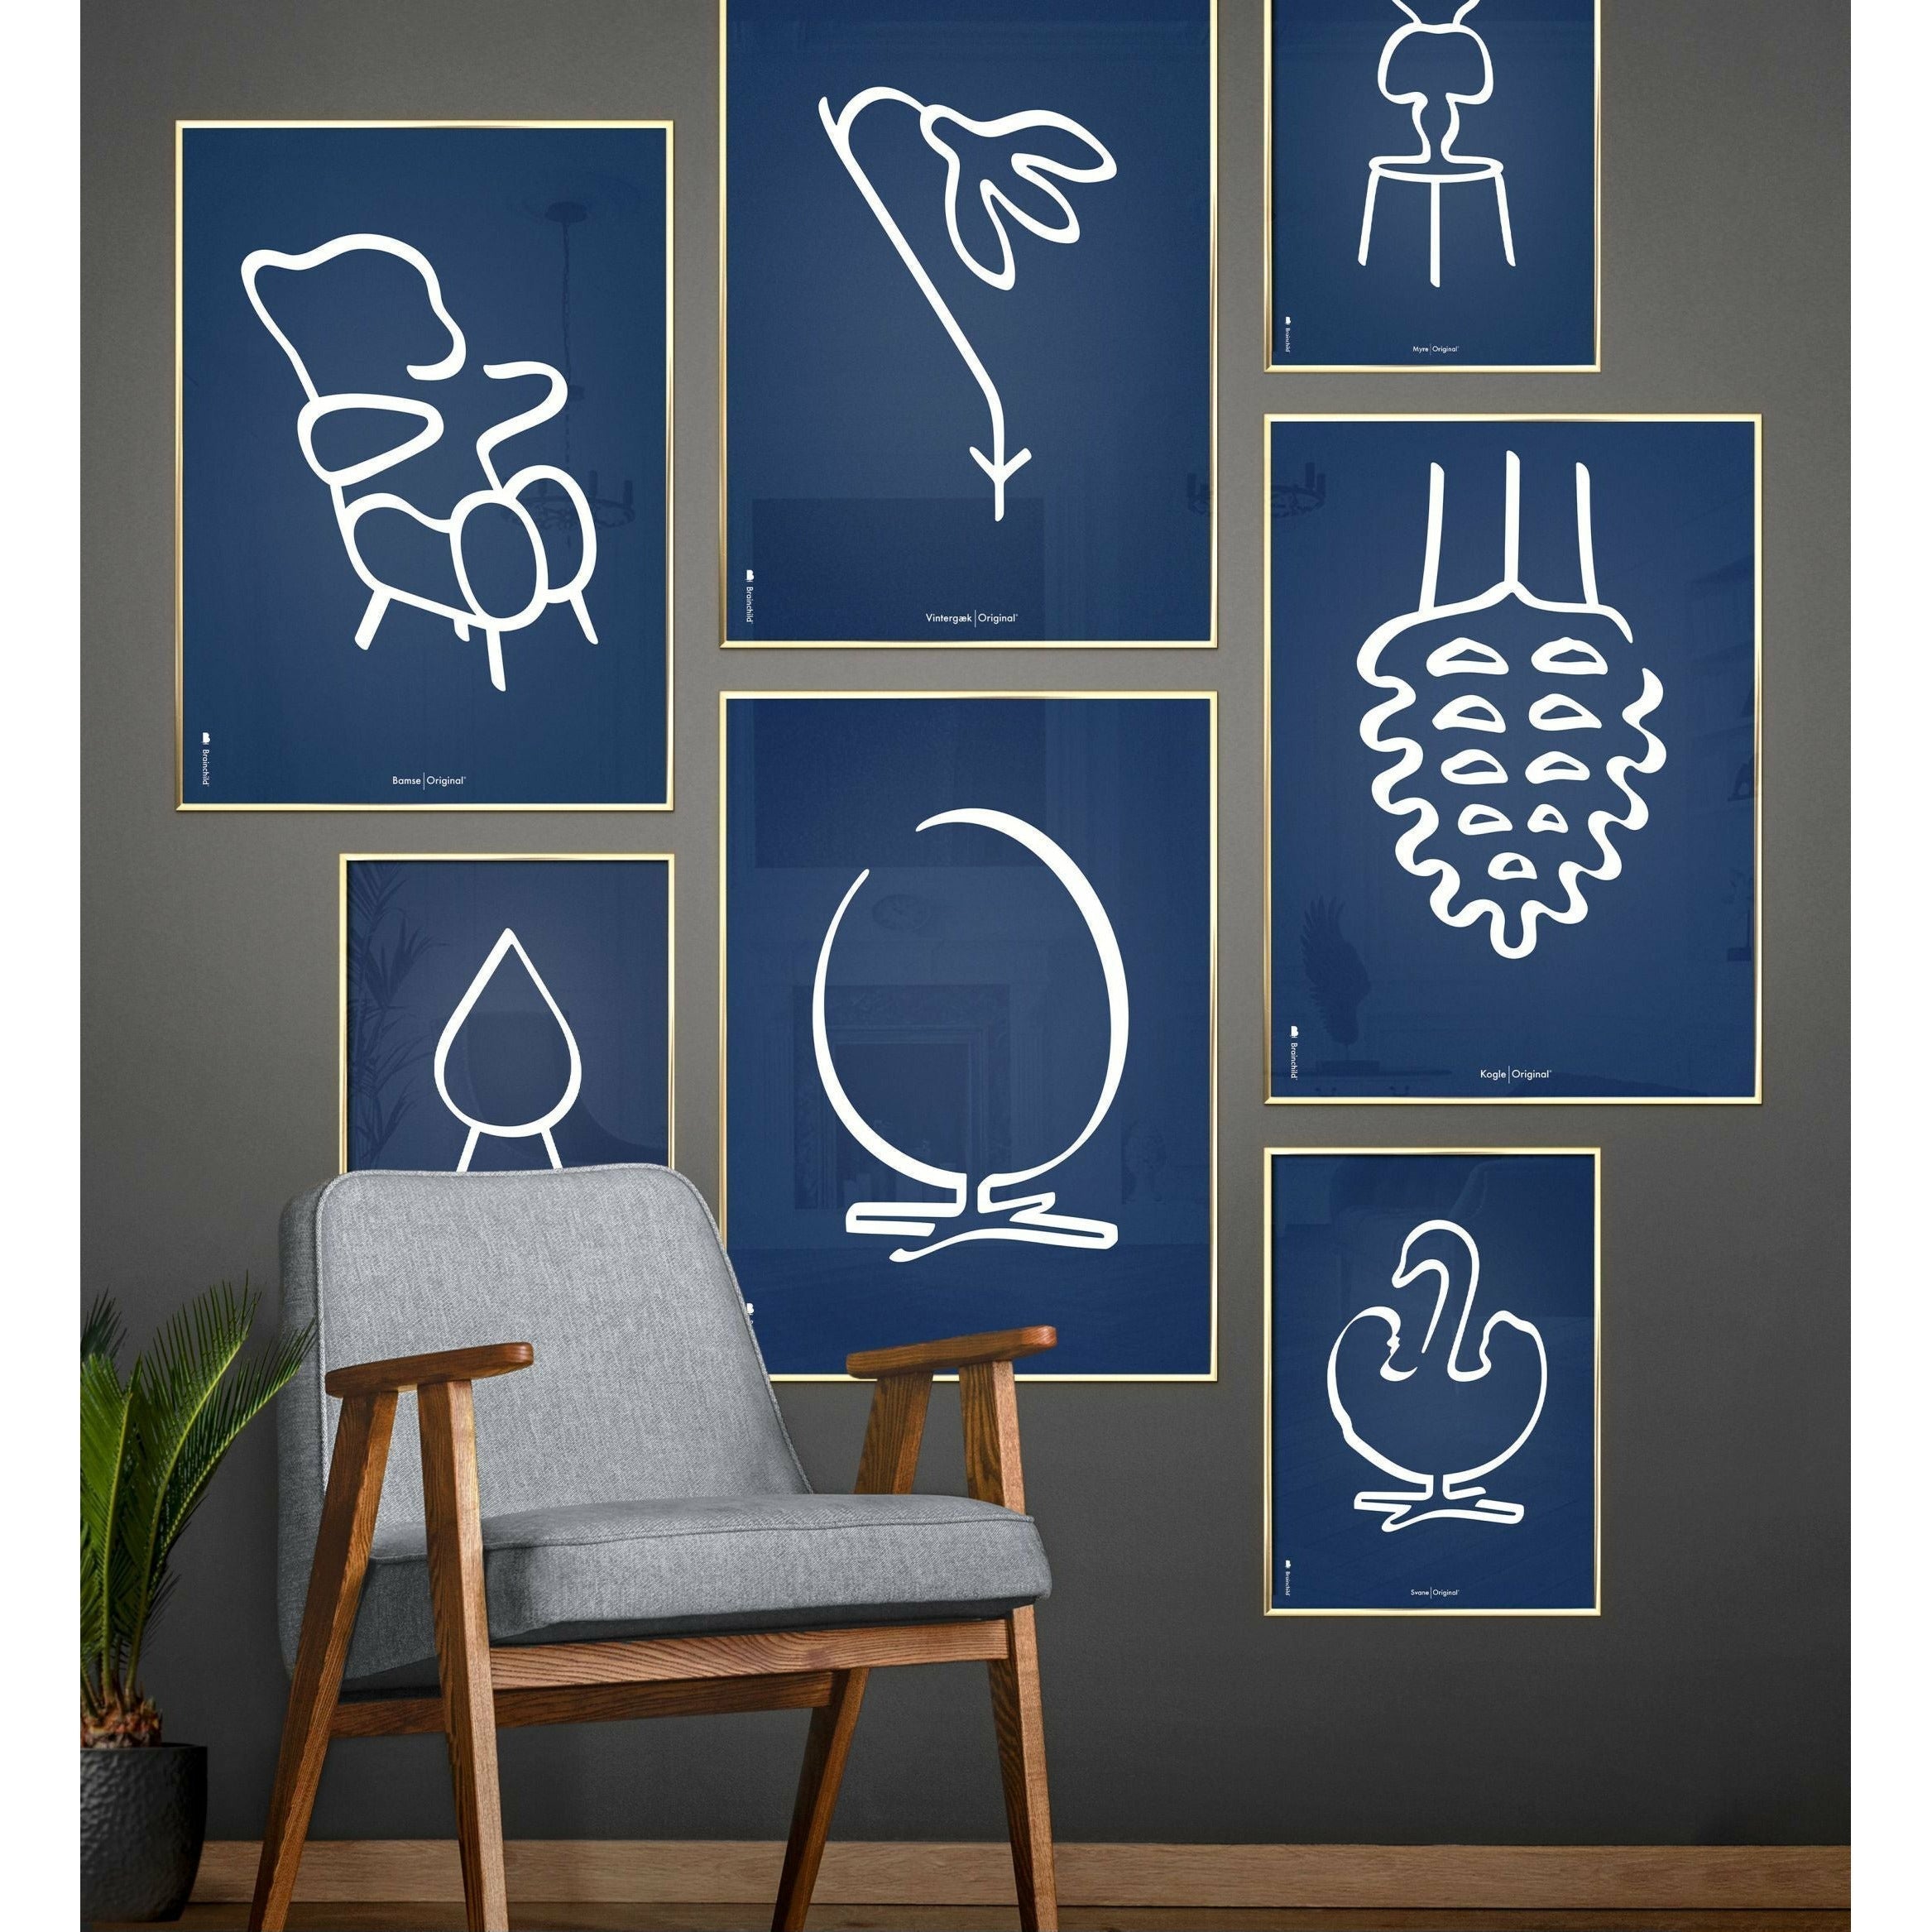 Pomysły plakat linii misy, rama w czarnym lakierowanym drewnie 30x40 cm, niebieskie tło